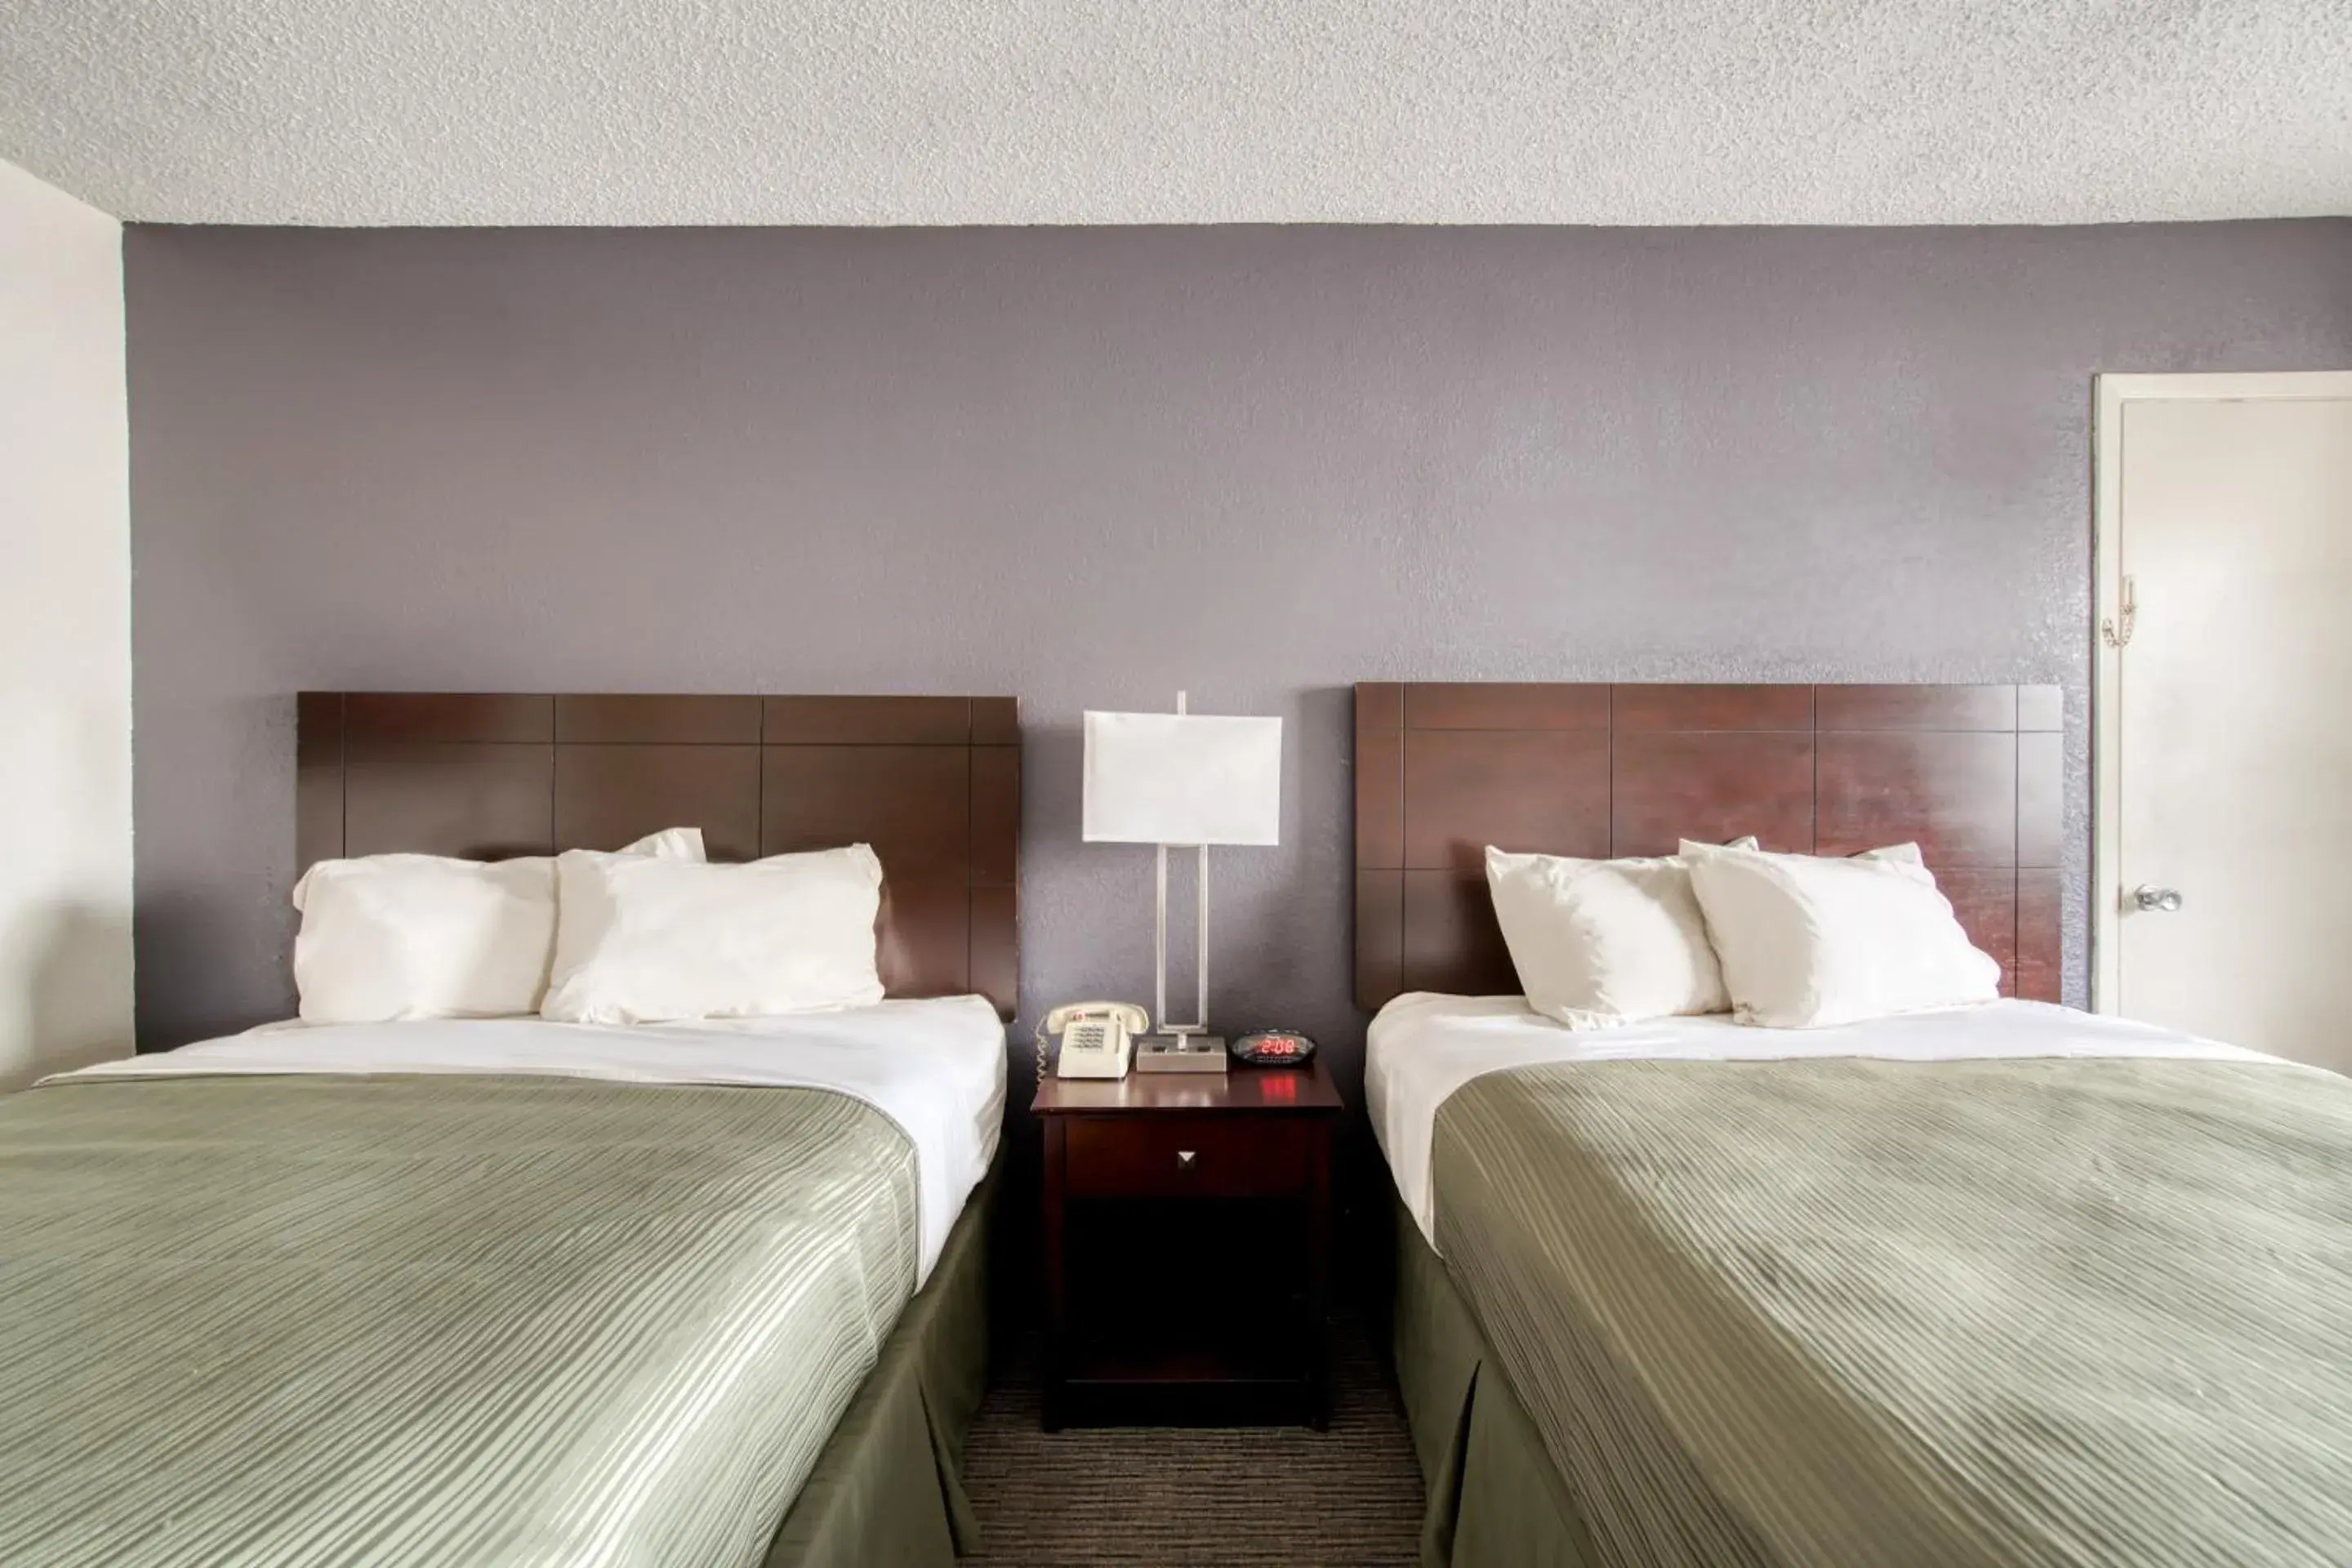 Bedroom, Room Photo in OYO Hotel Alexandria LA- Hwy 165